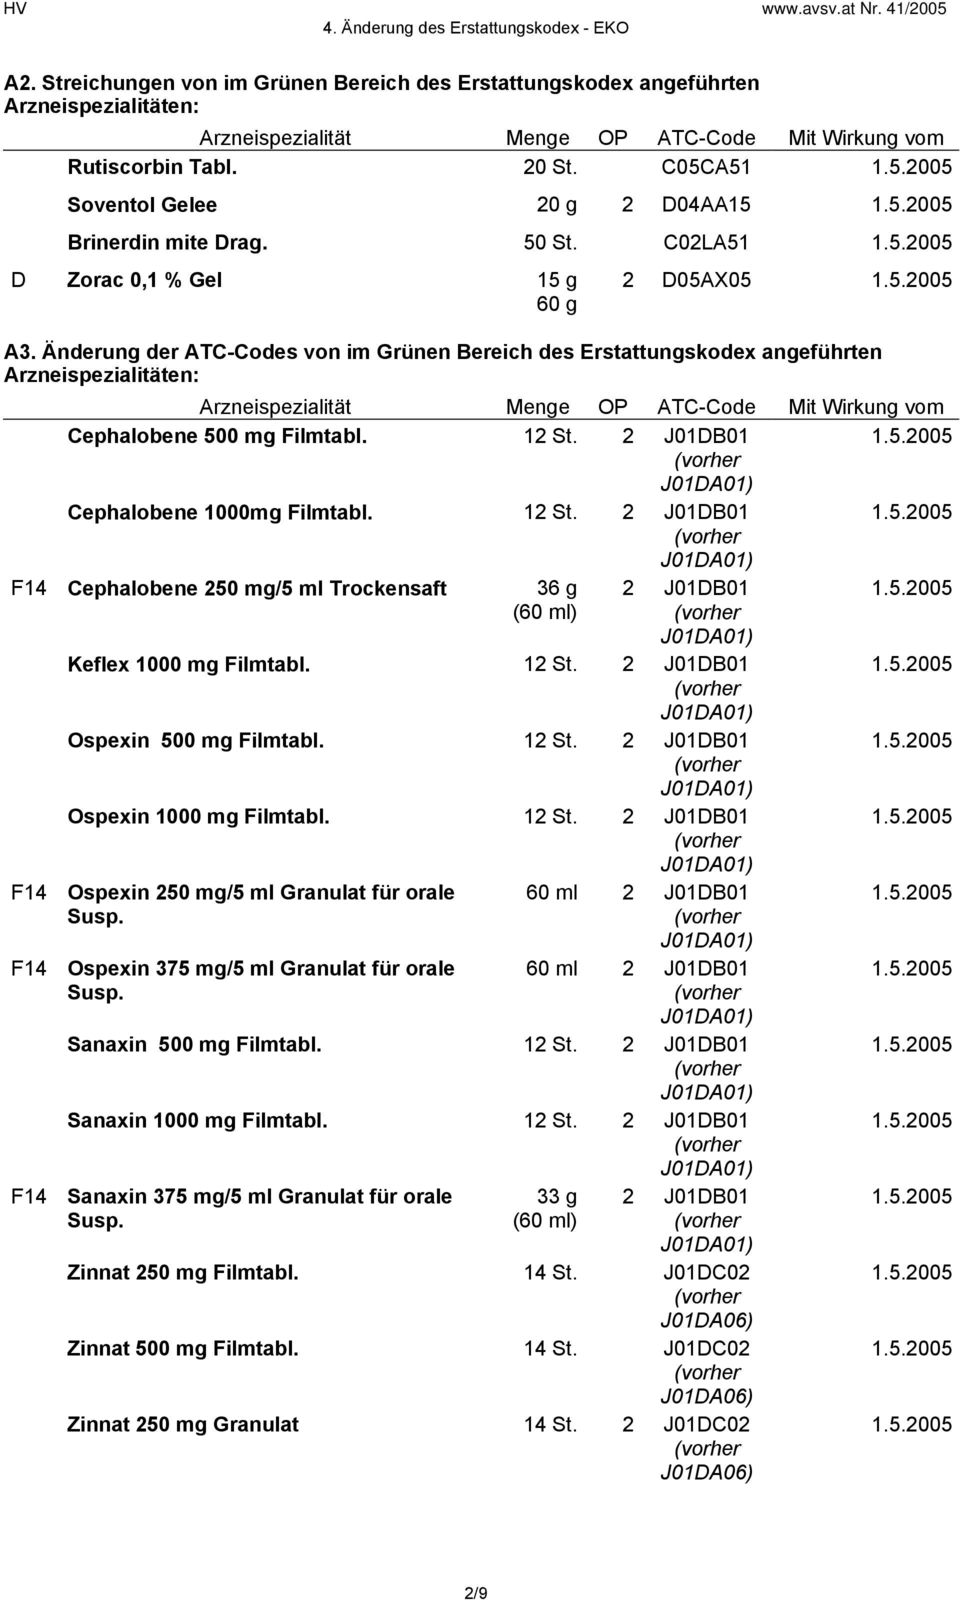 Änderung der ATC-Codes von im Grünen Bereich des Erstattungskodex angeführten Arzneispezialität Menge OP ATC-Code Mit Wirkung vom Cephalobene 500 mg Filmtabl. 12 St.